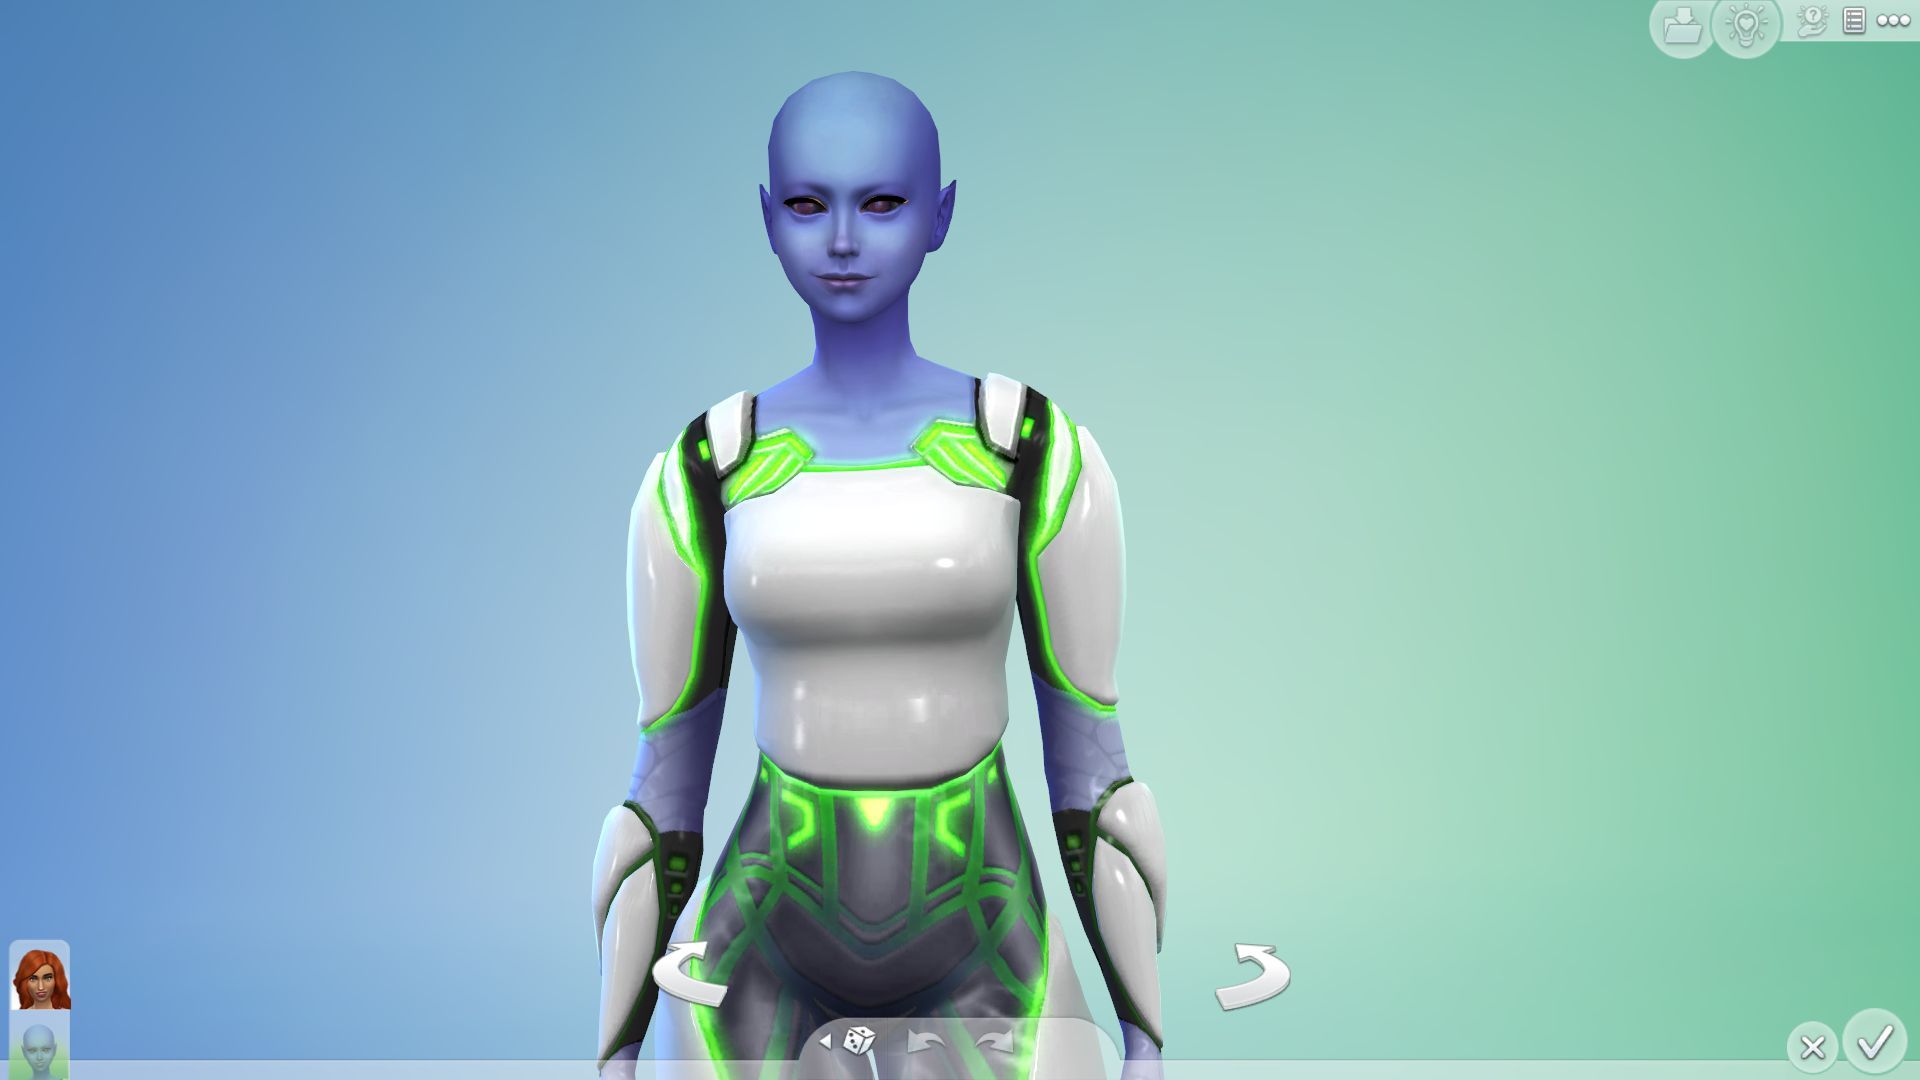 An alien sim in CAS, showing that Nina Caliente is now an alien.